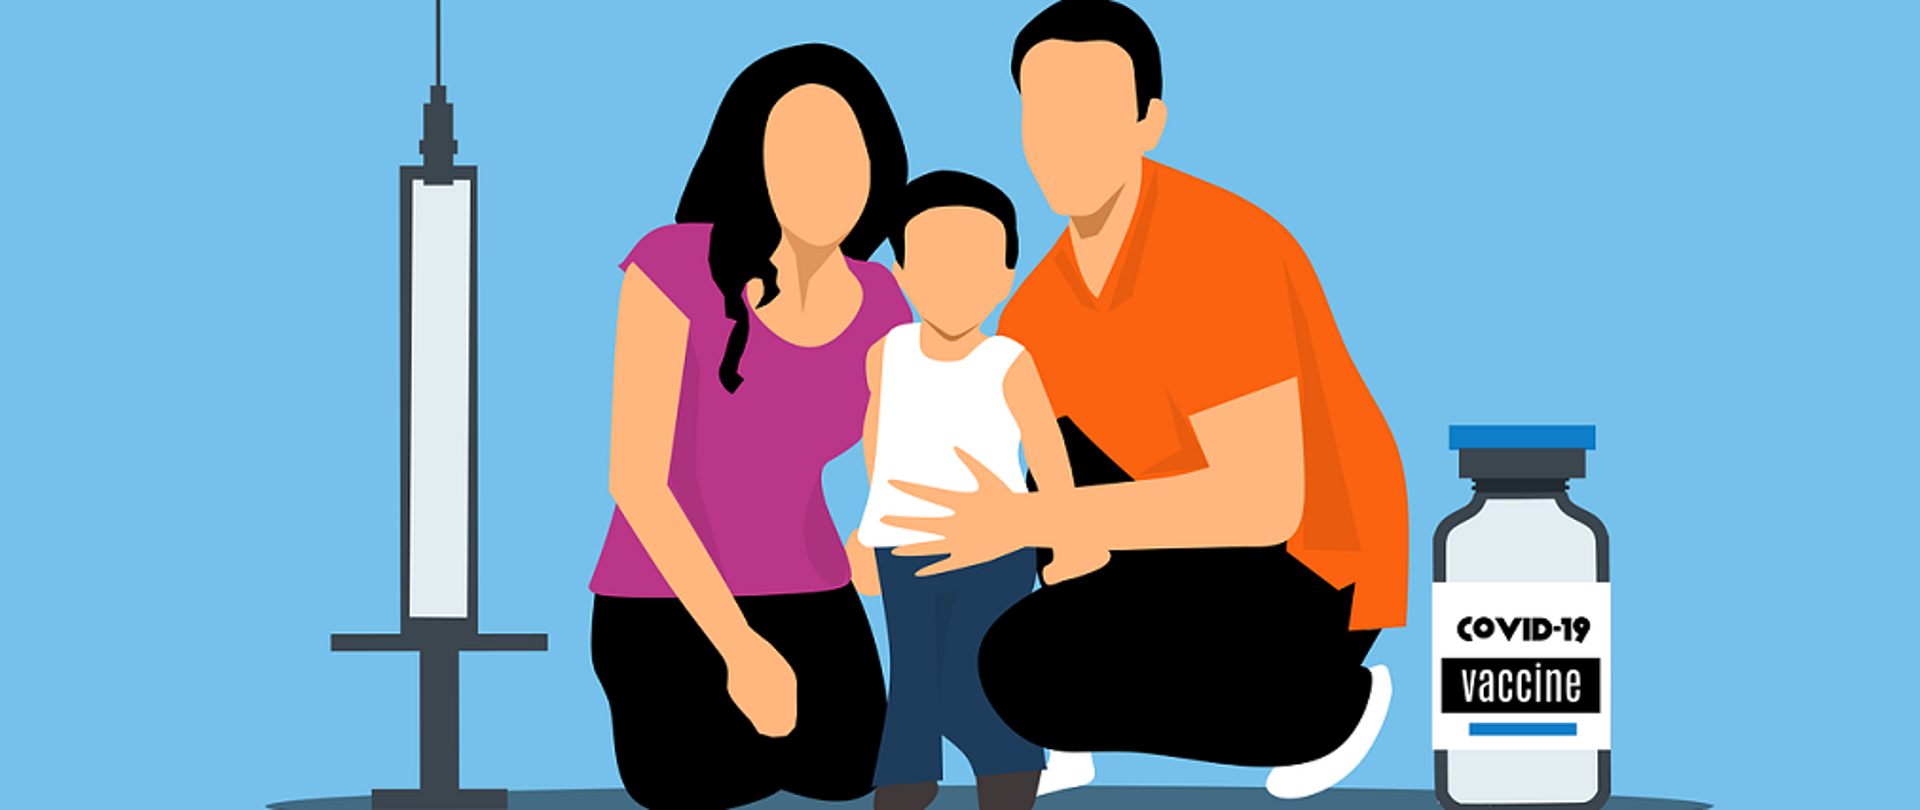 Grafika przedstawiająca 3 postaci - matkę, ojca i dziecko. Obok nich po prawej stronie fiolka szczepionki z napisem Vacine Covid-19, po lewej strzykawka z igłą.